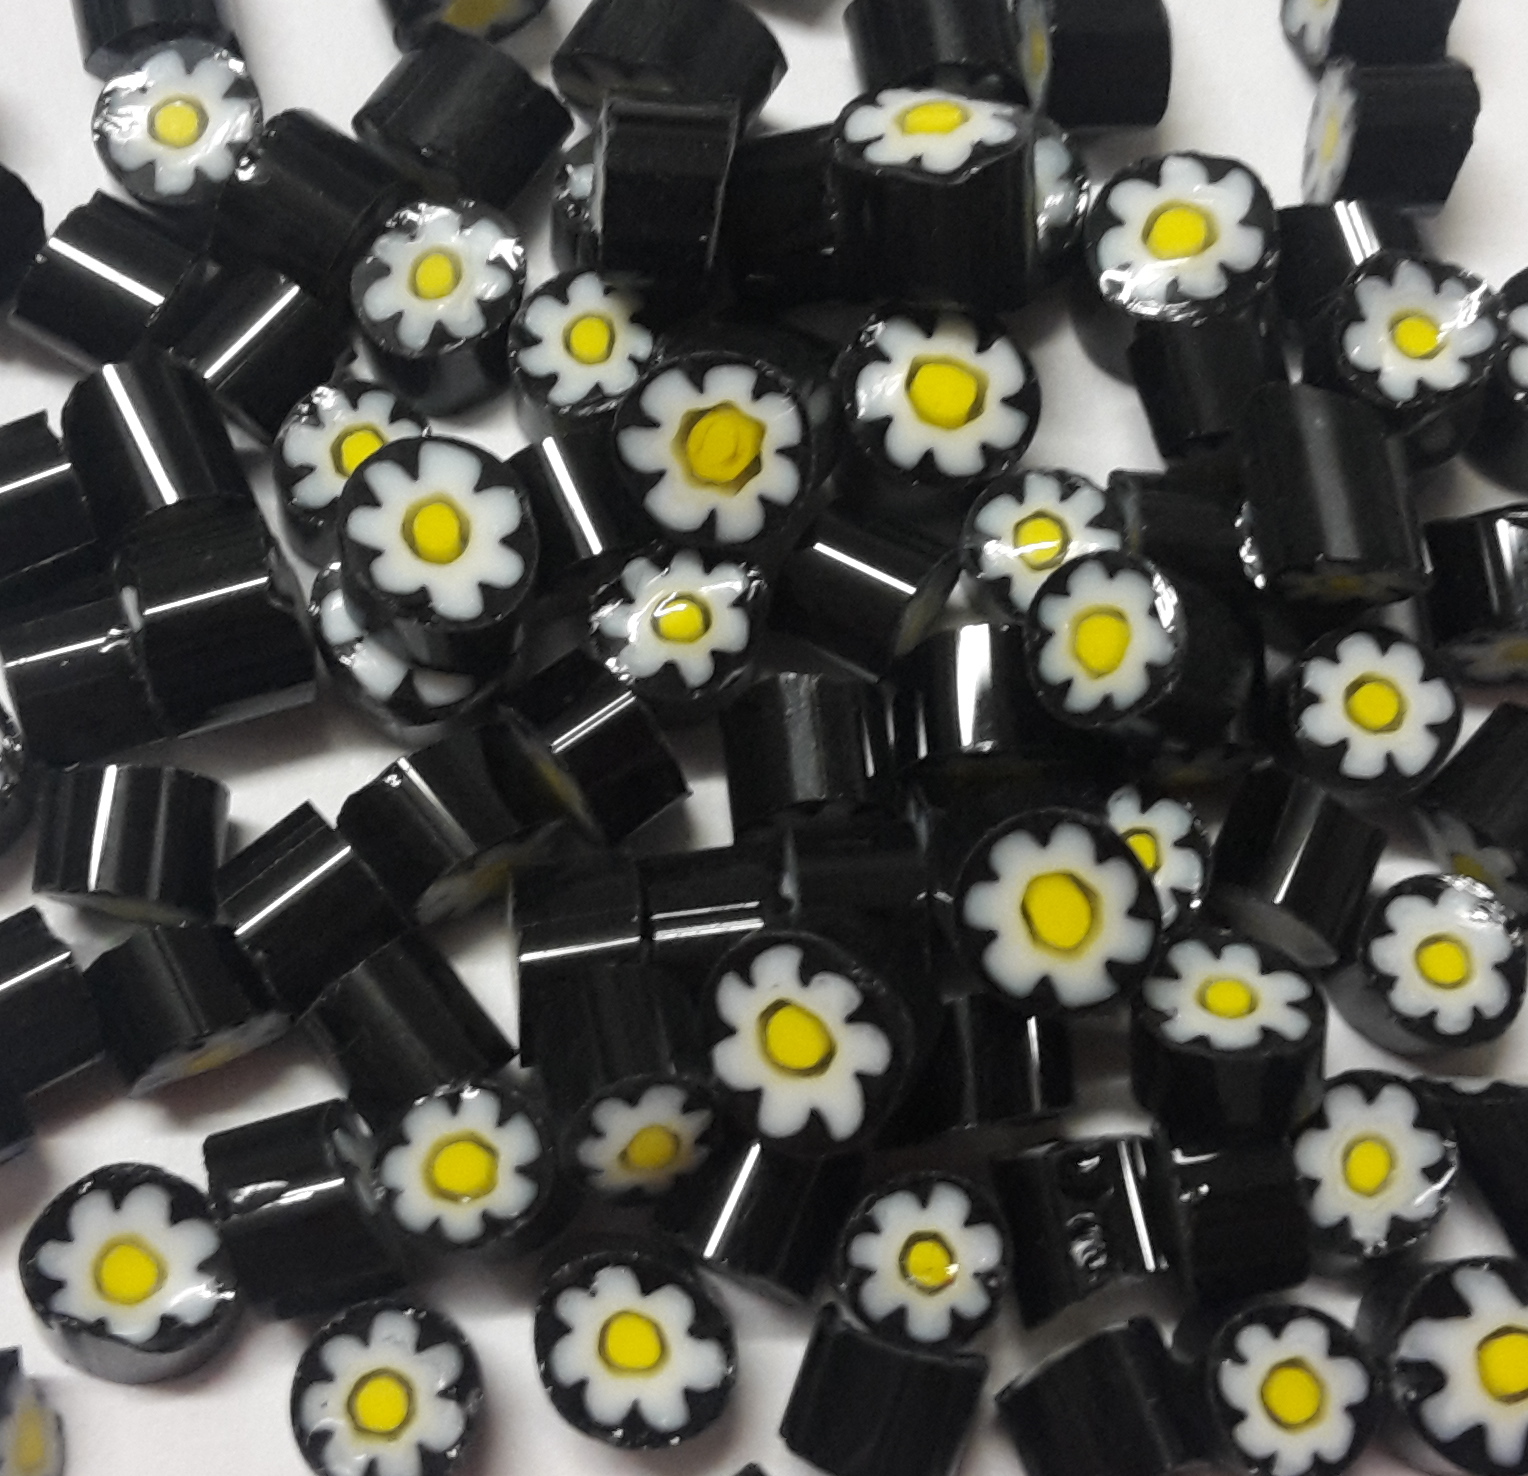 Trasparente U56 fiore bianco nero giallo millefiori